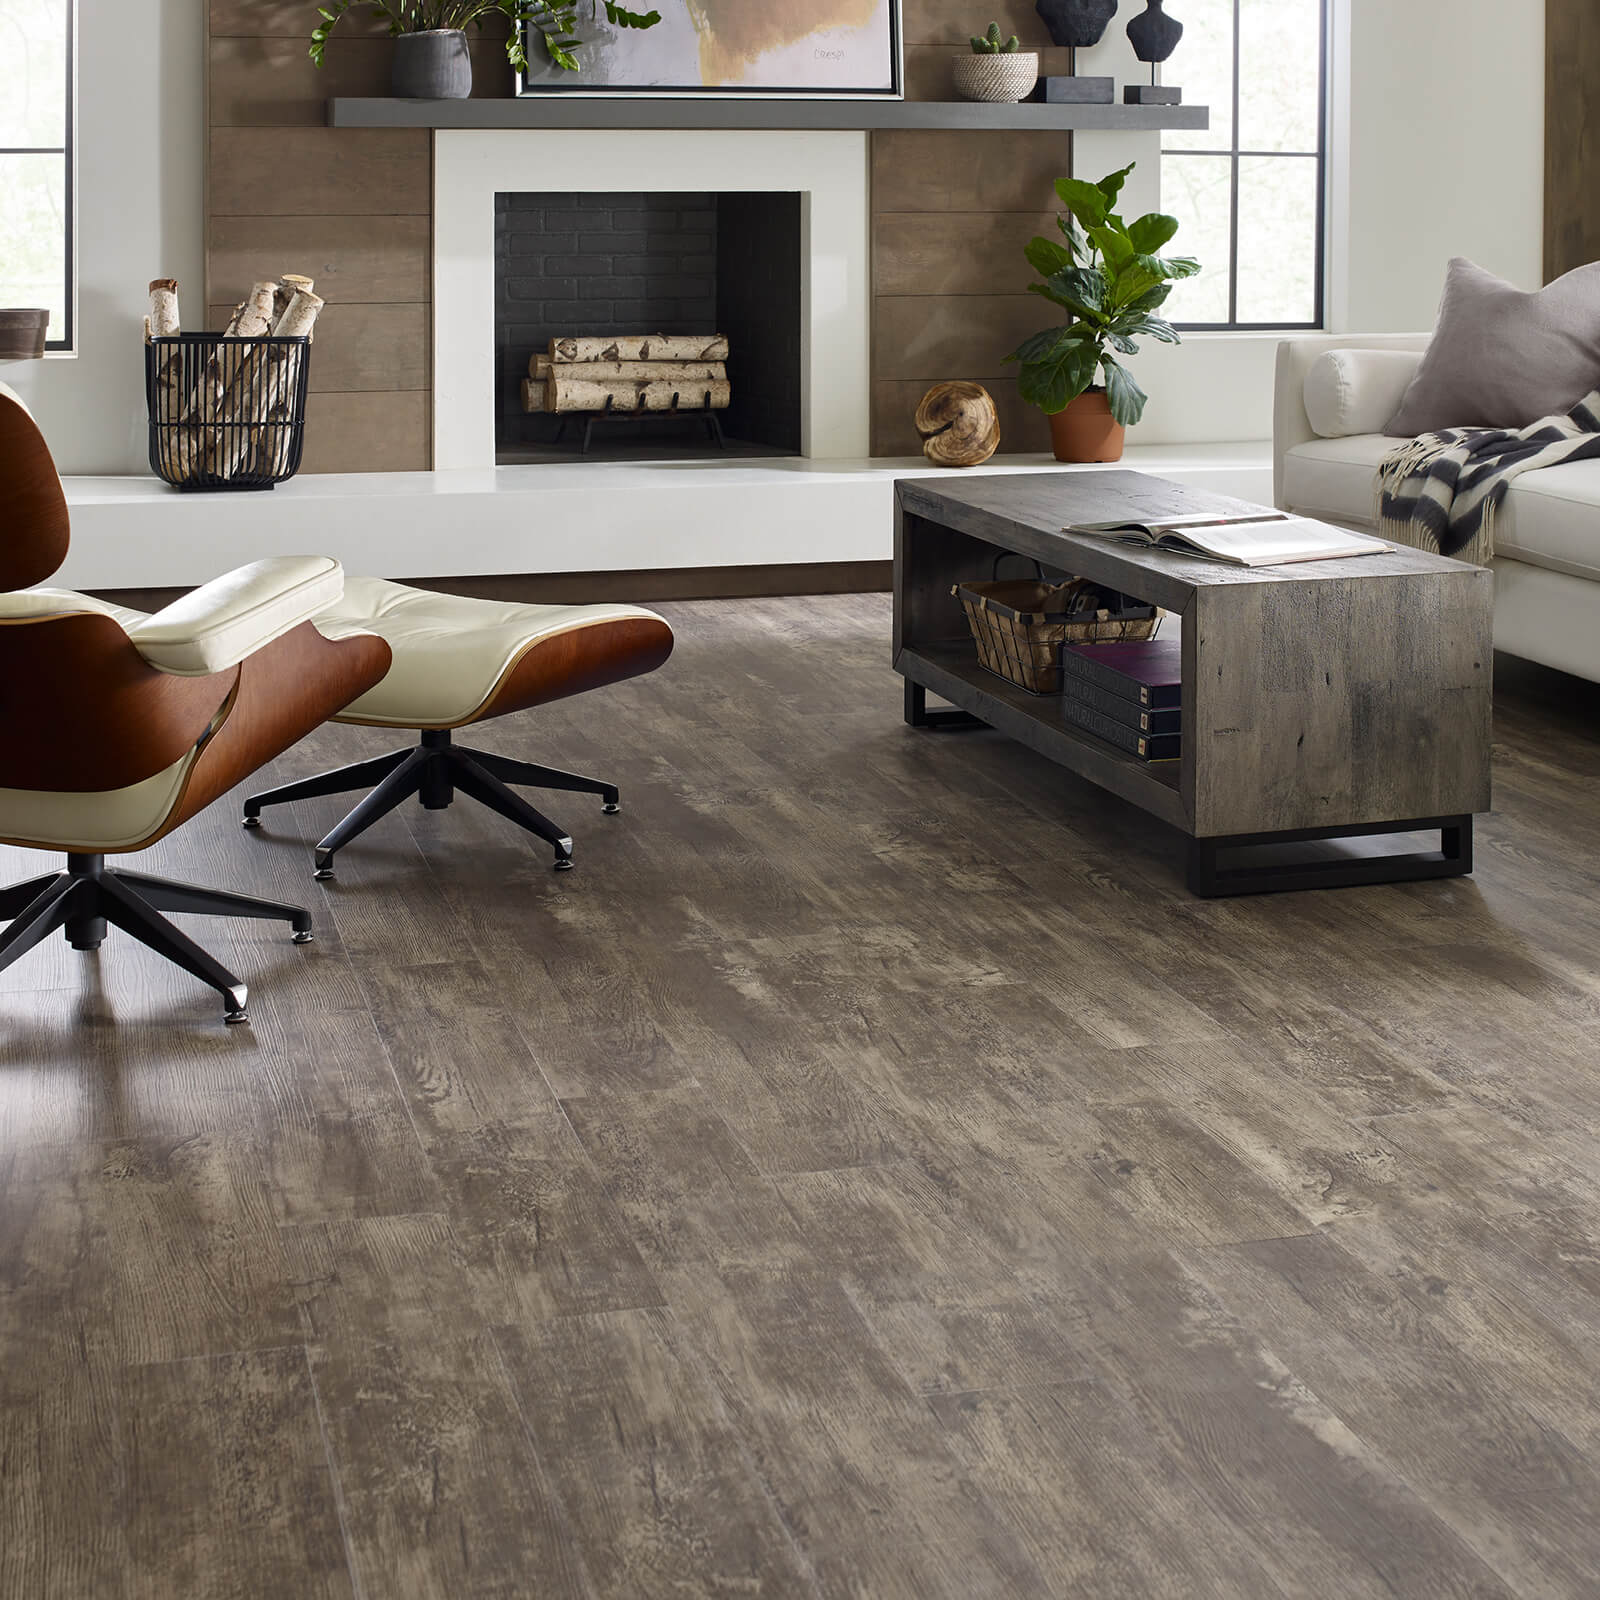 Living room flooring | The L&L Company